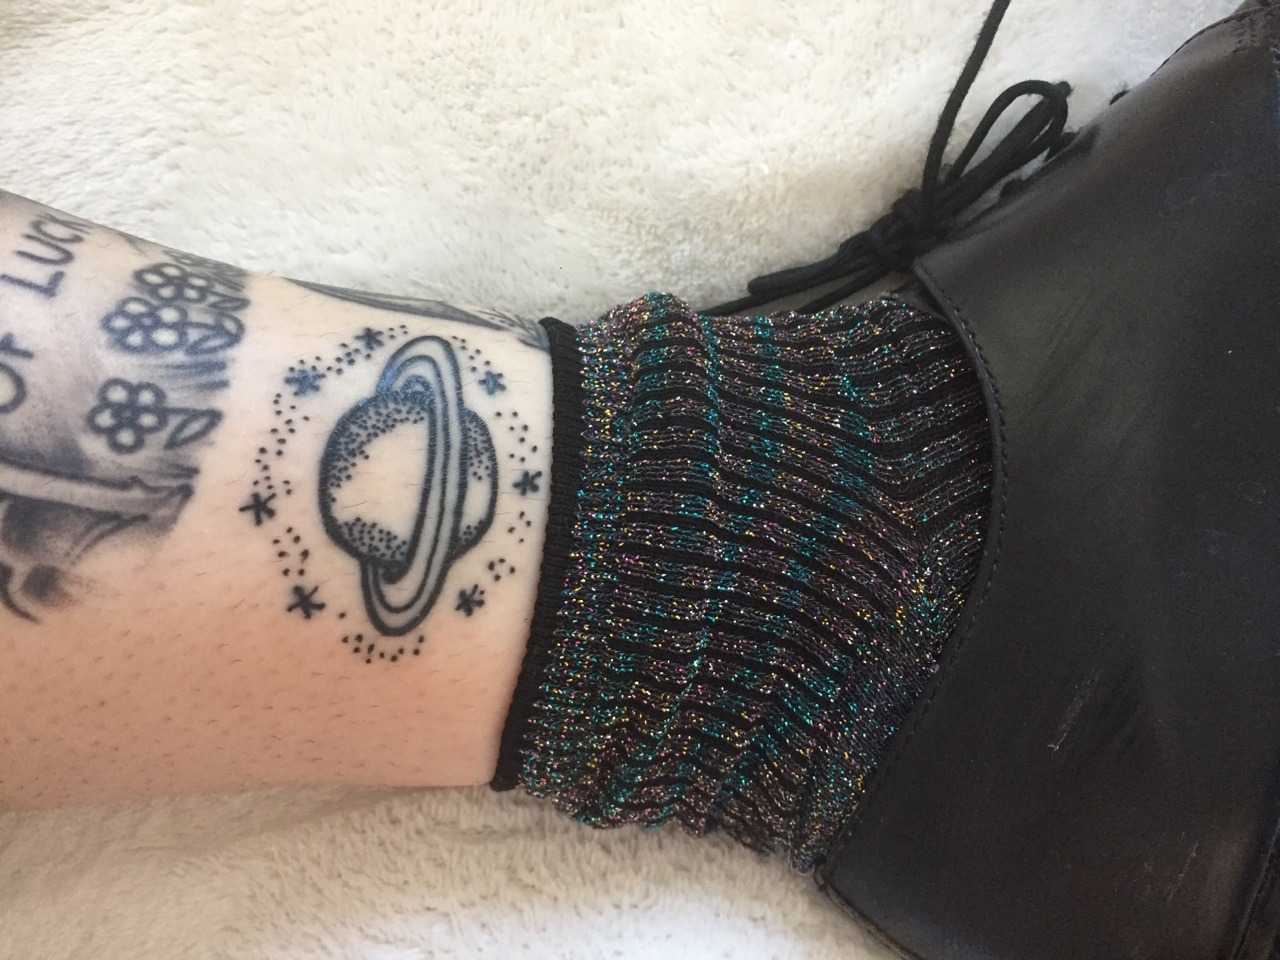 Cute stick and poke Saturn tattoo